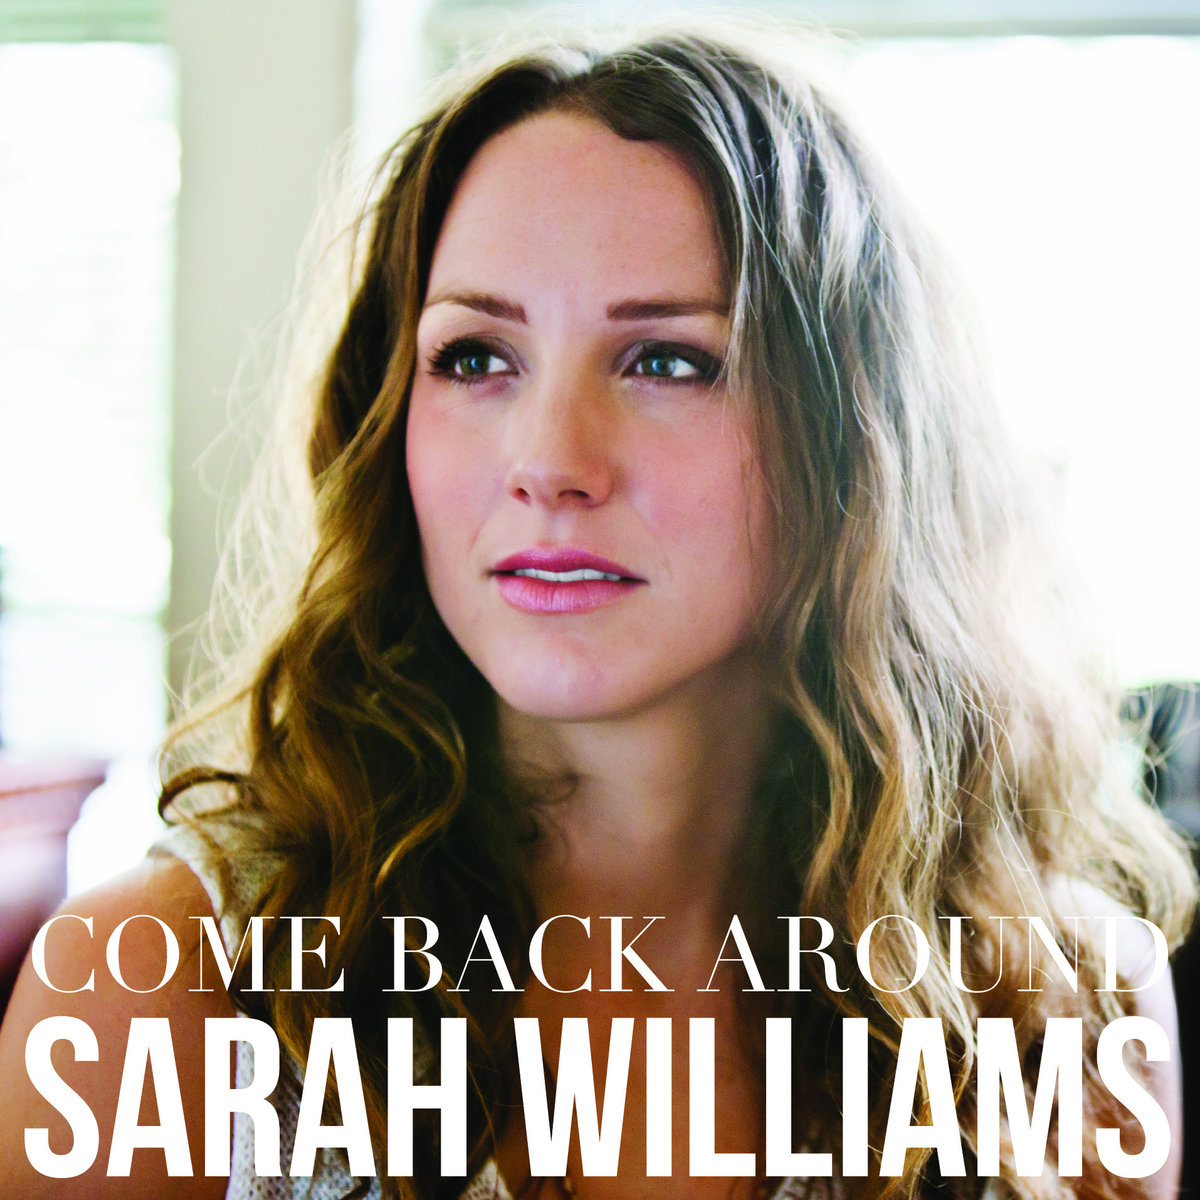 Sarah williams